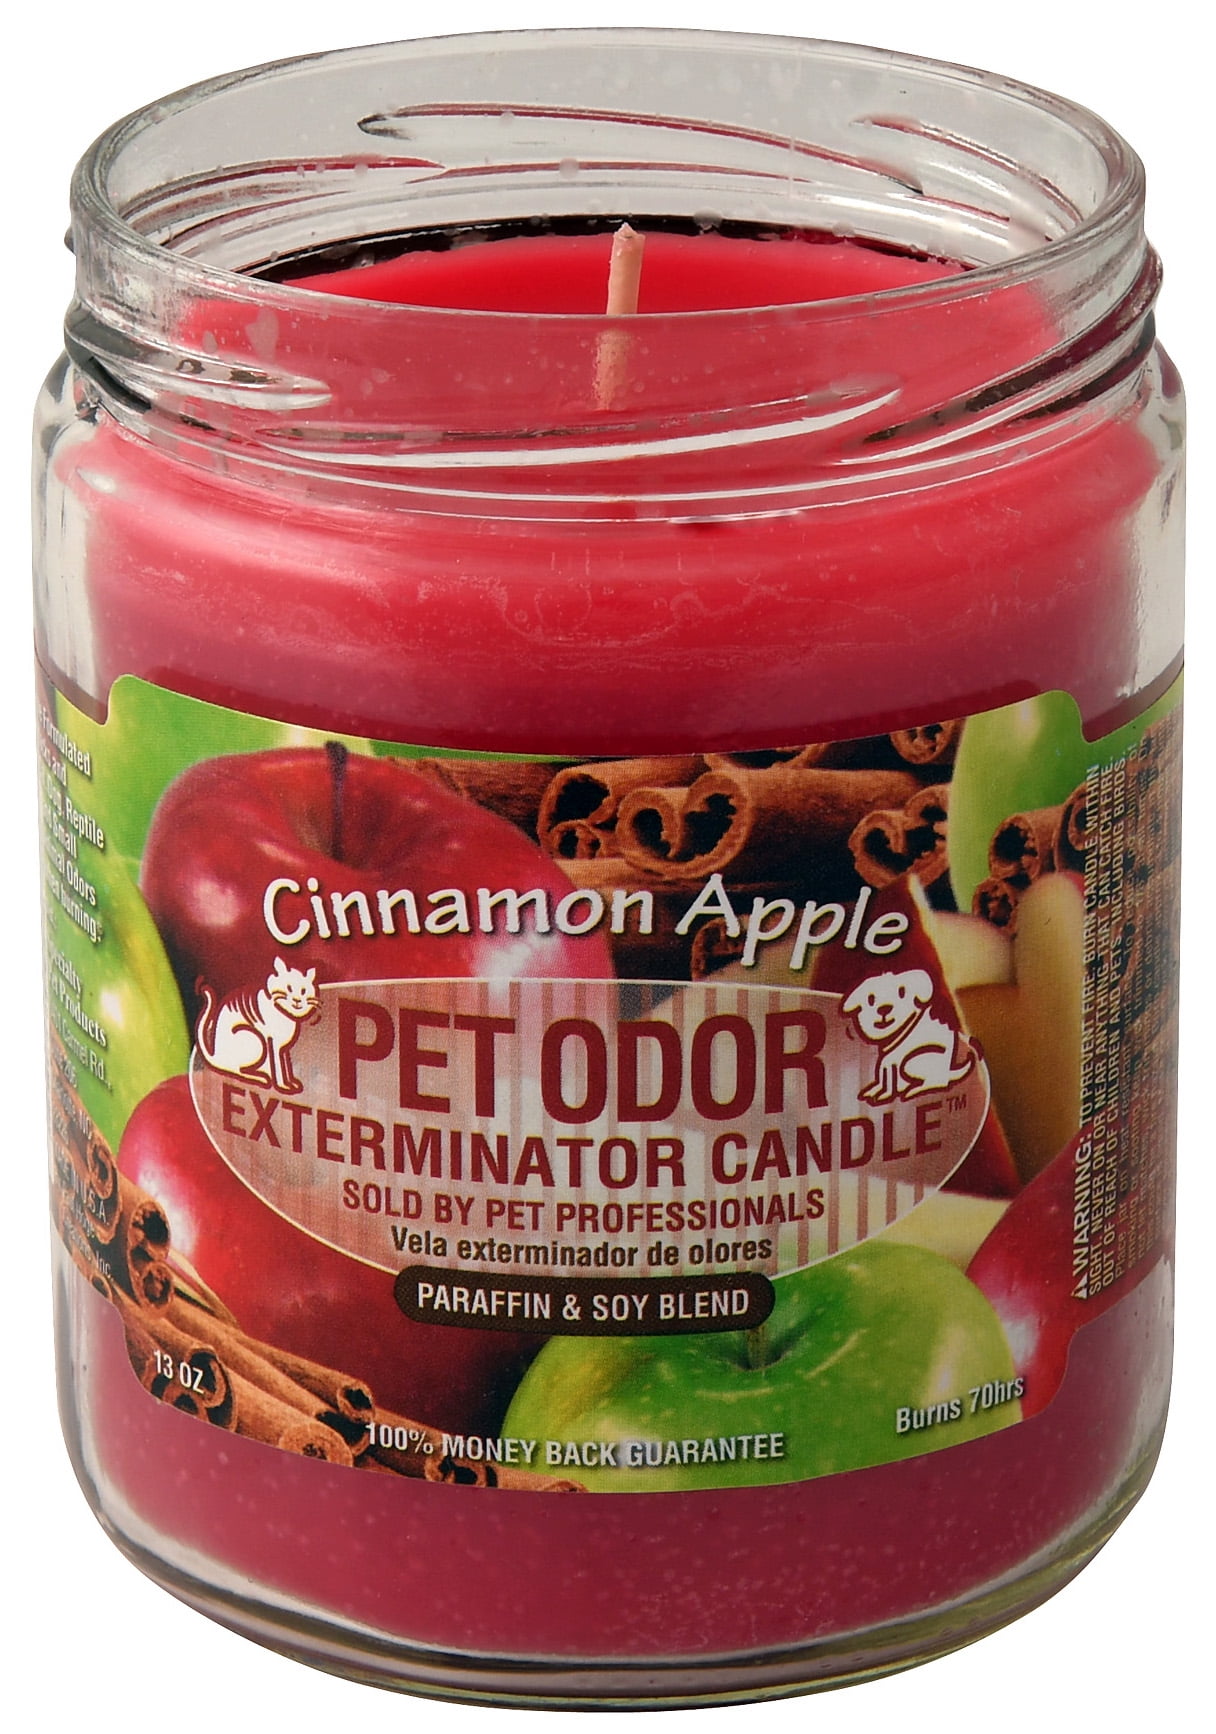 Pet Odor Exterminator Candle, Cinnamon Apple